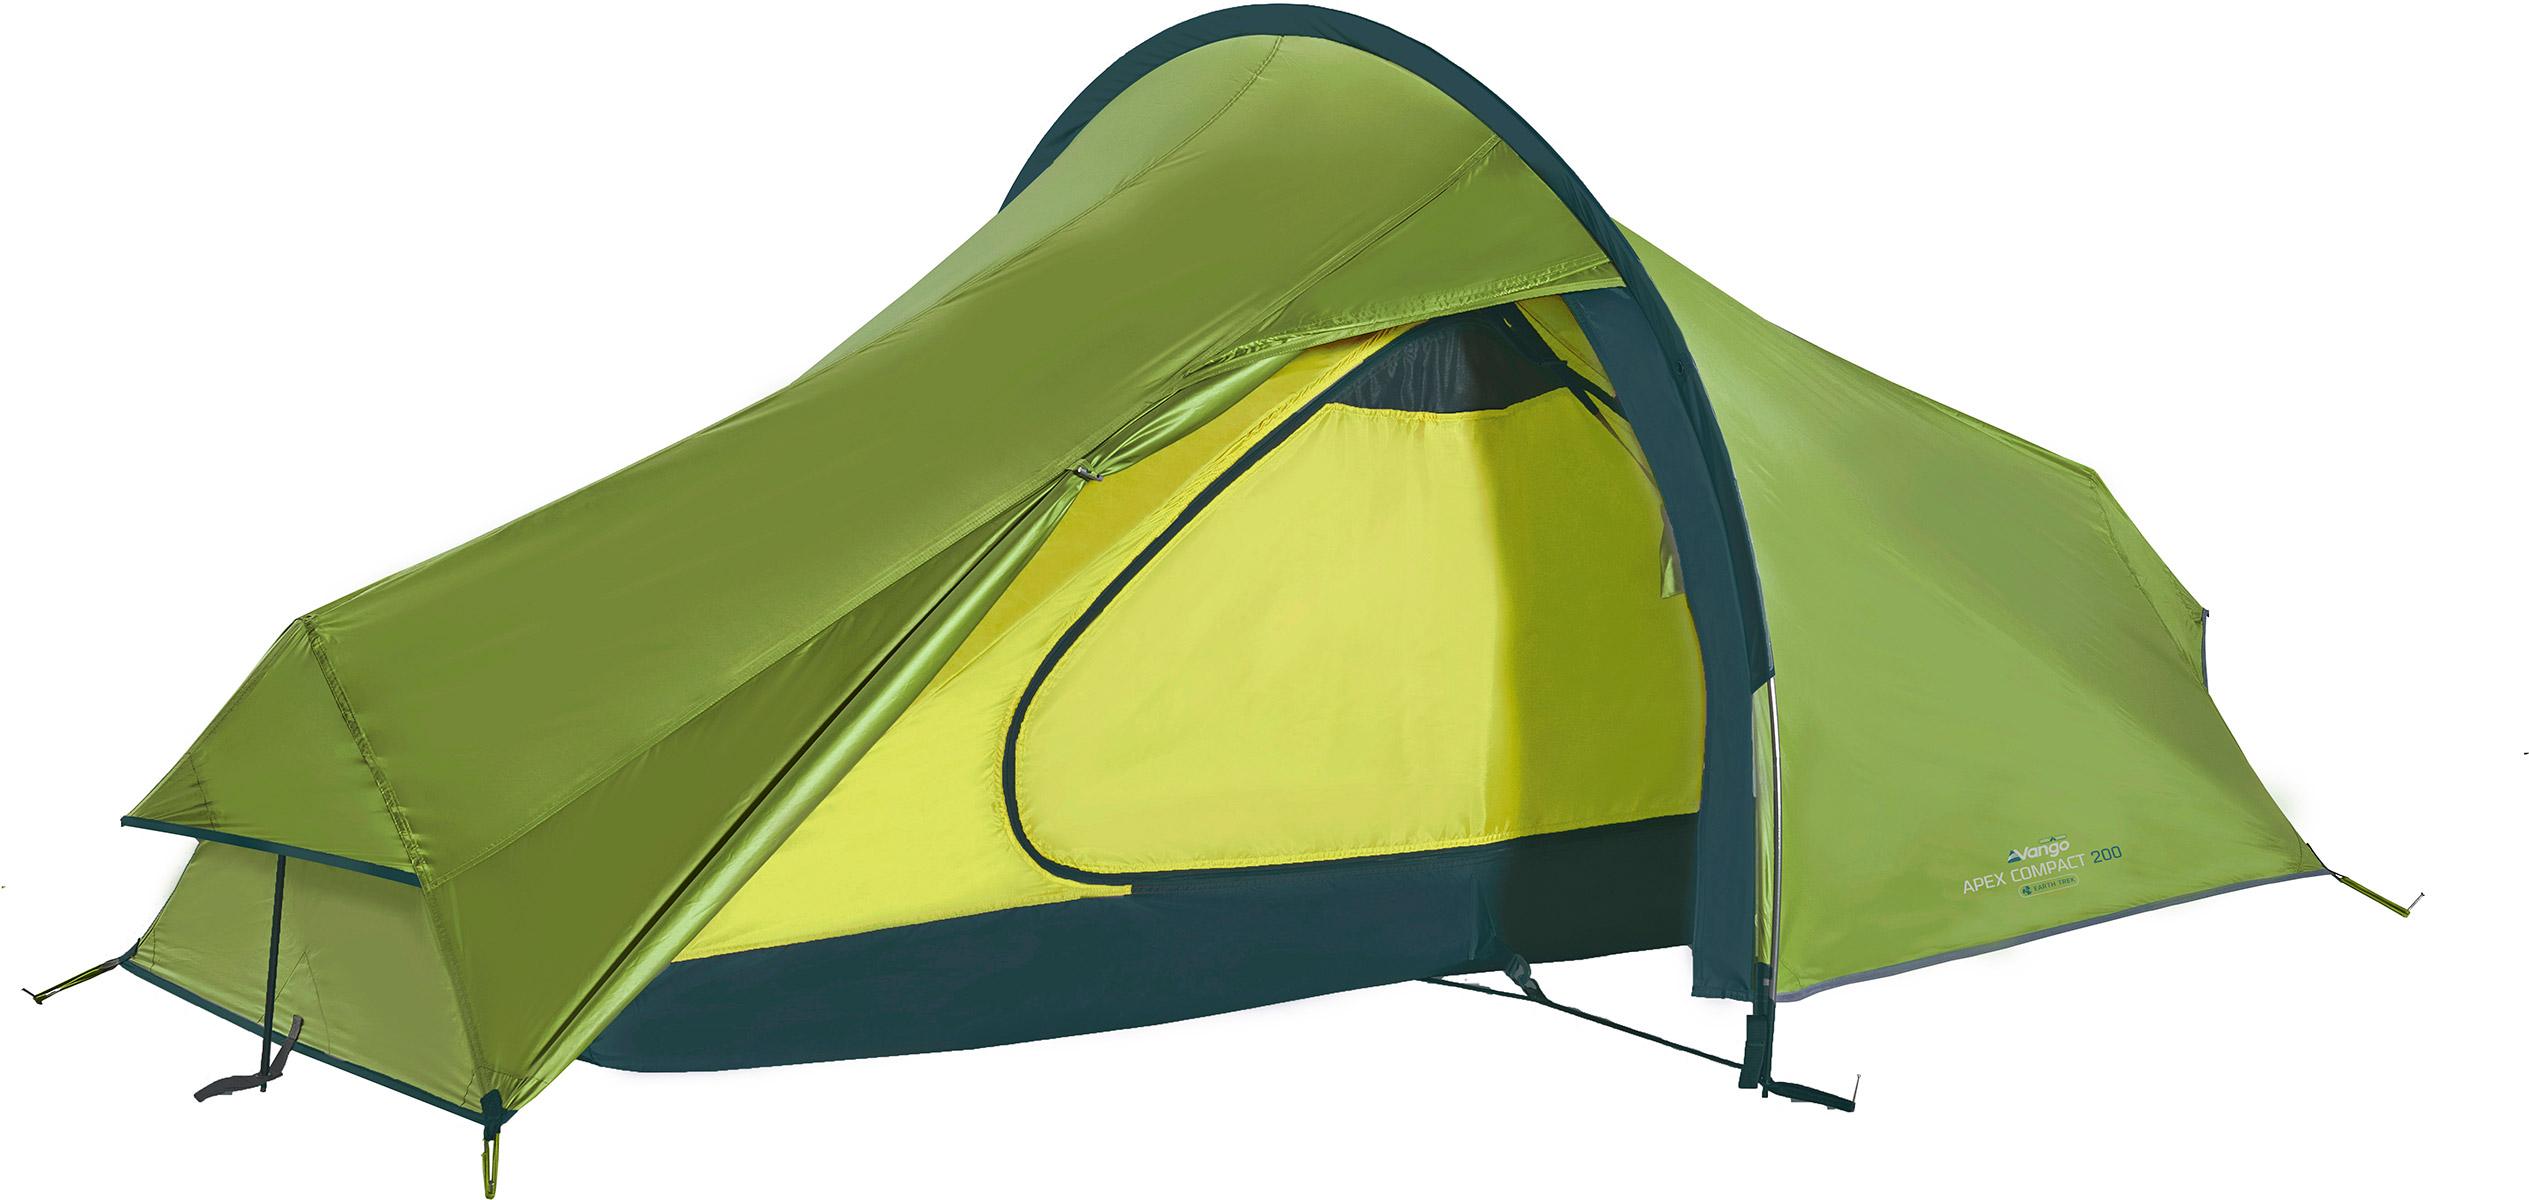 Vango Apex Compact 200 Tent - Pamir Green